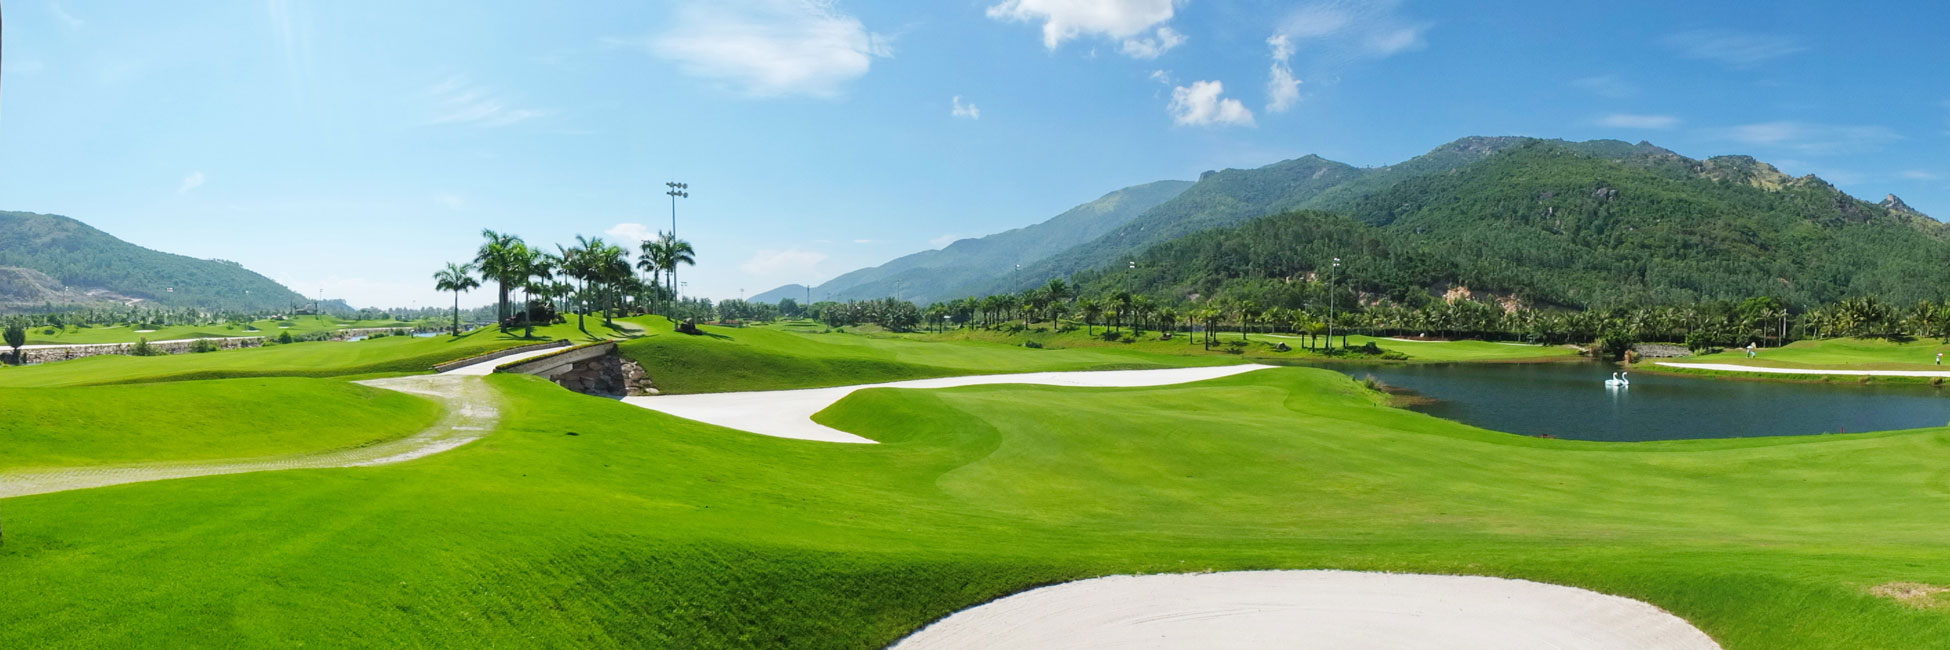 Nha Trang Golf Courses